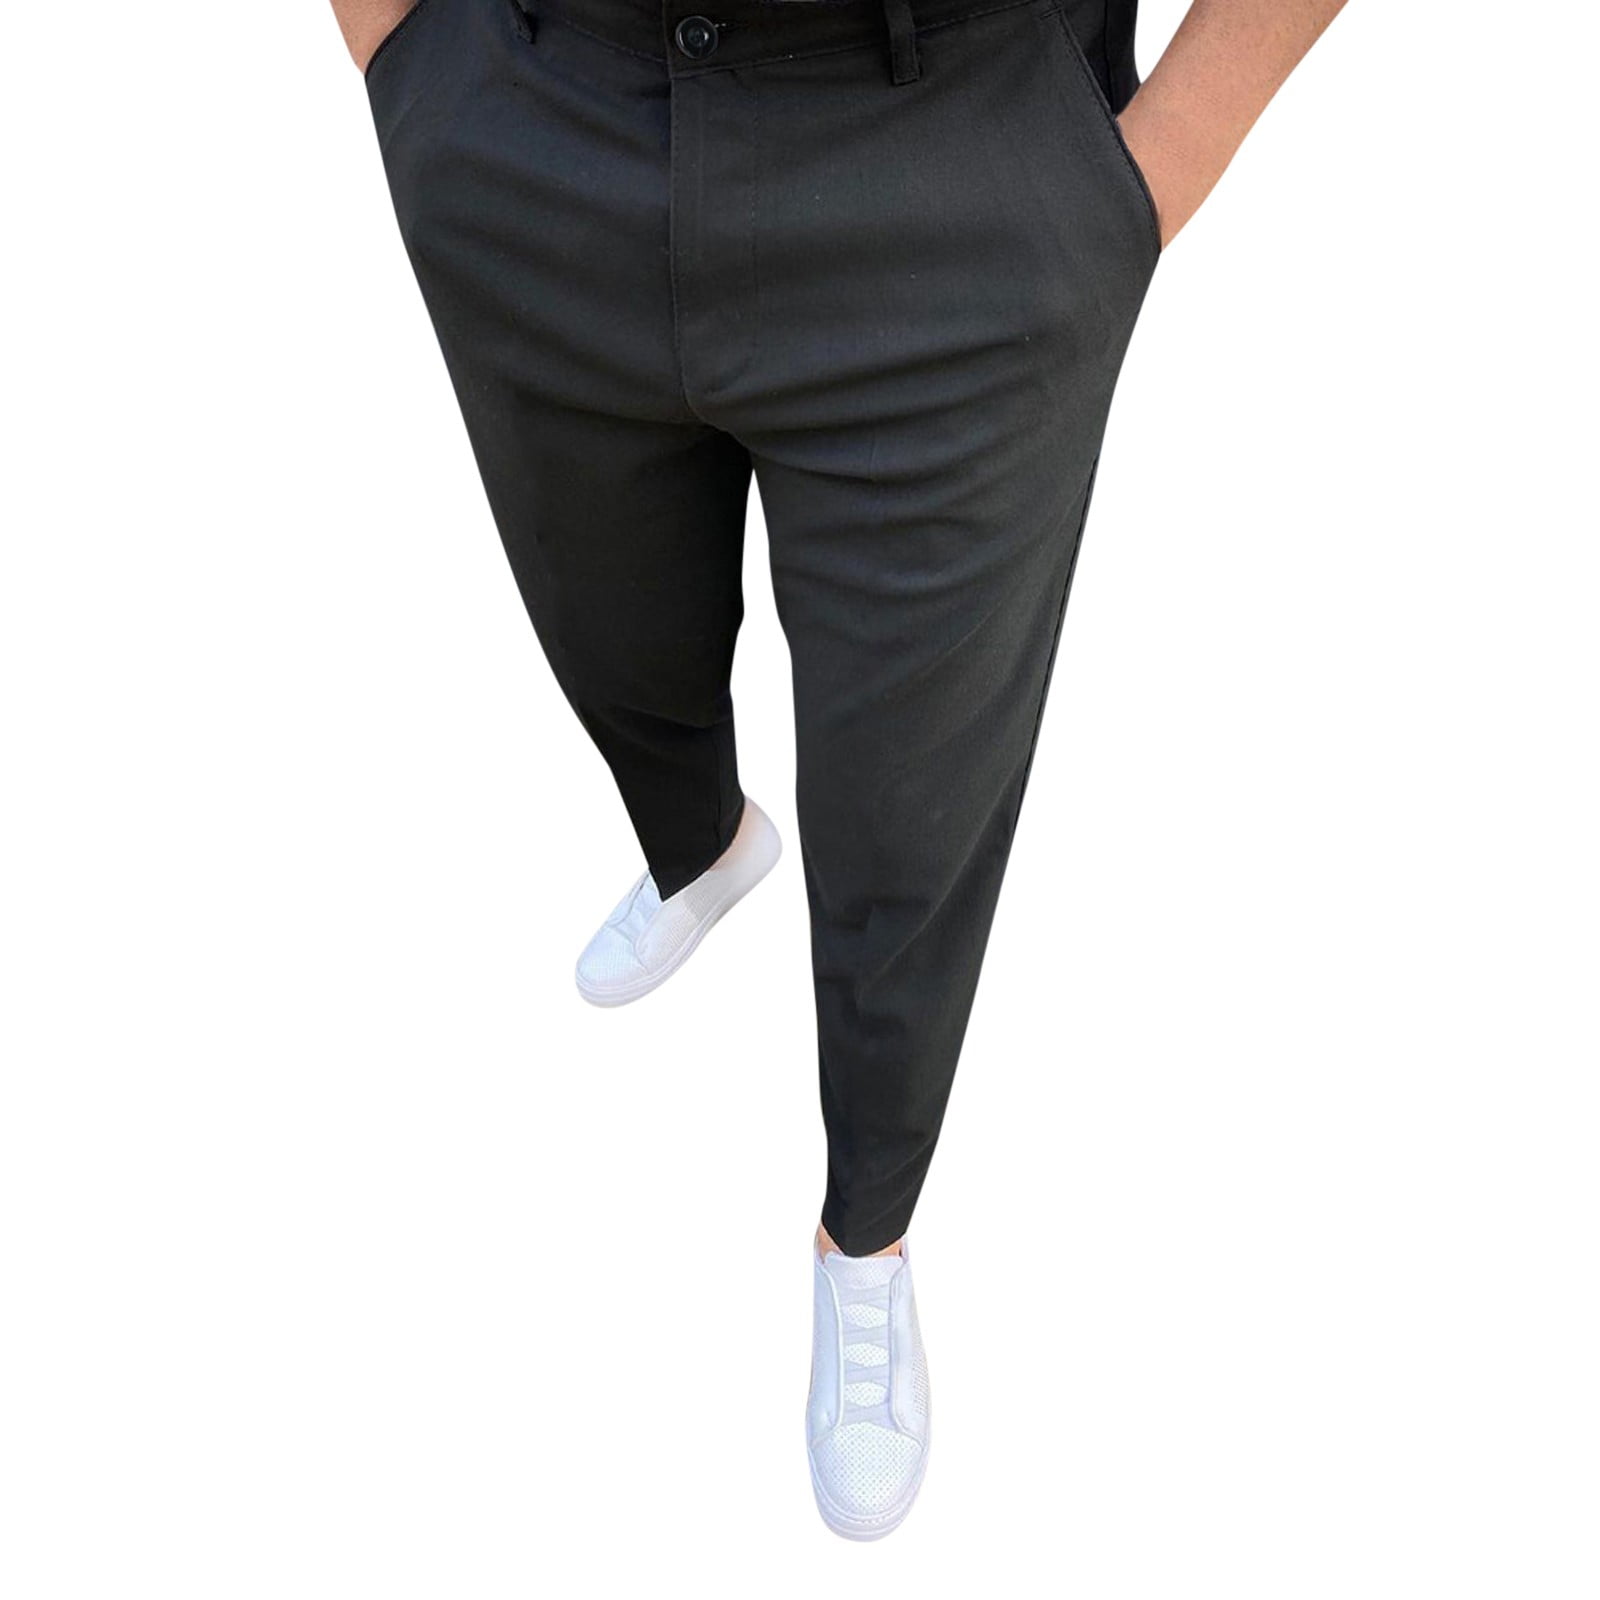 Size 13 Tech Pants Men Casual Versatile Fashion Trousers Pant Pants Soild  Color Slim Fit Small Feet Suit Trousers 